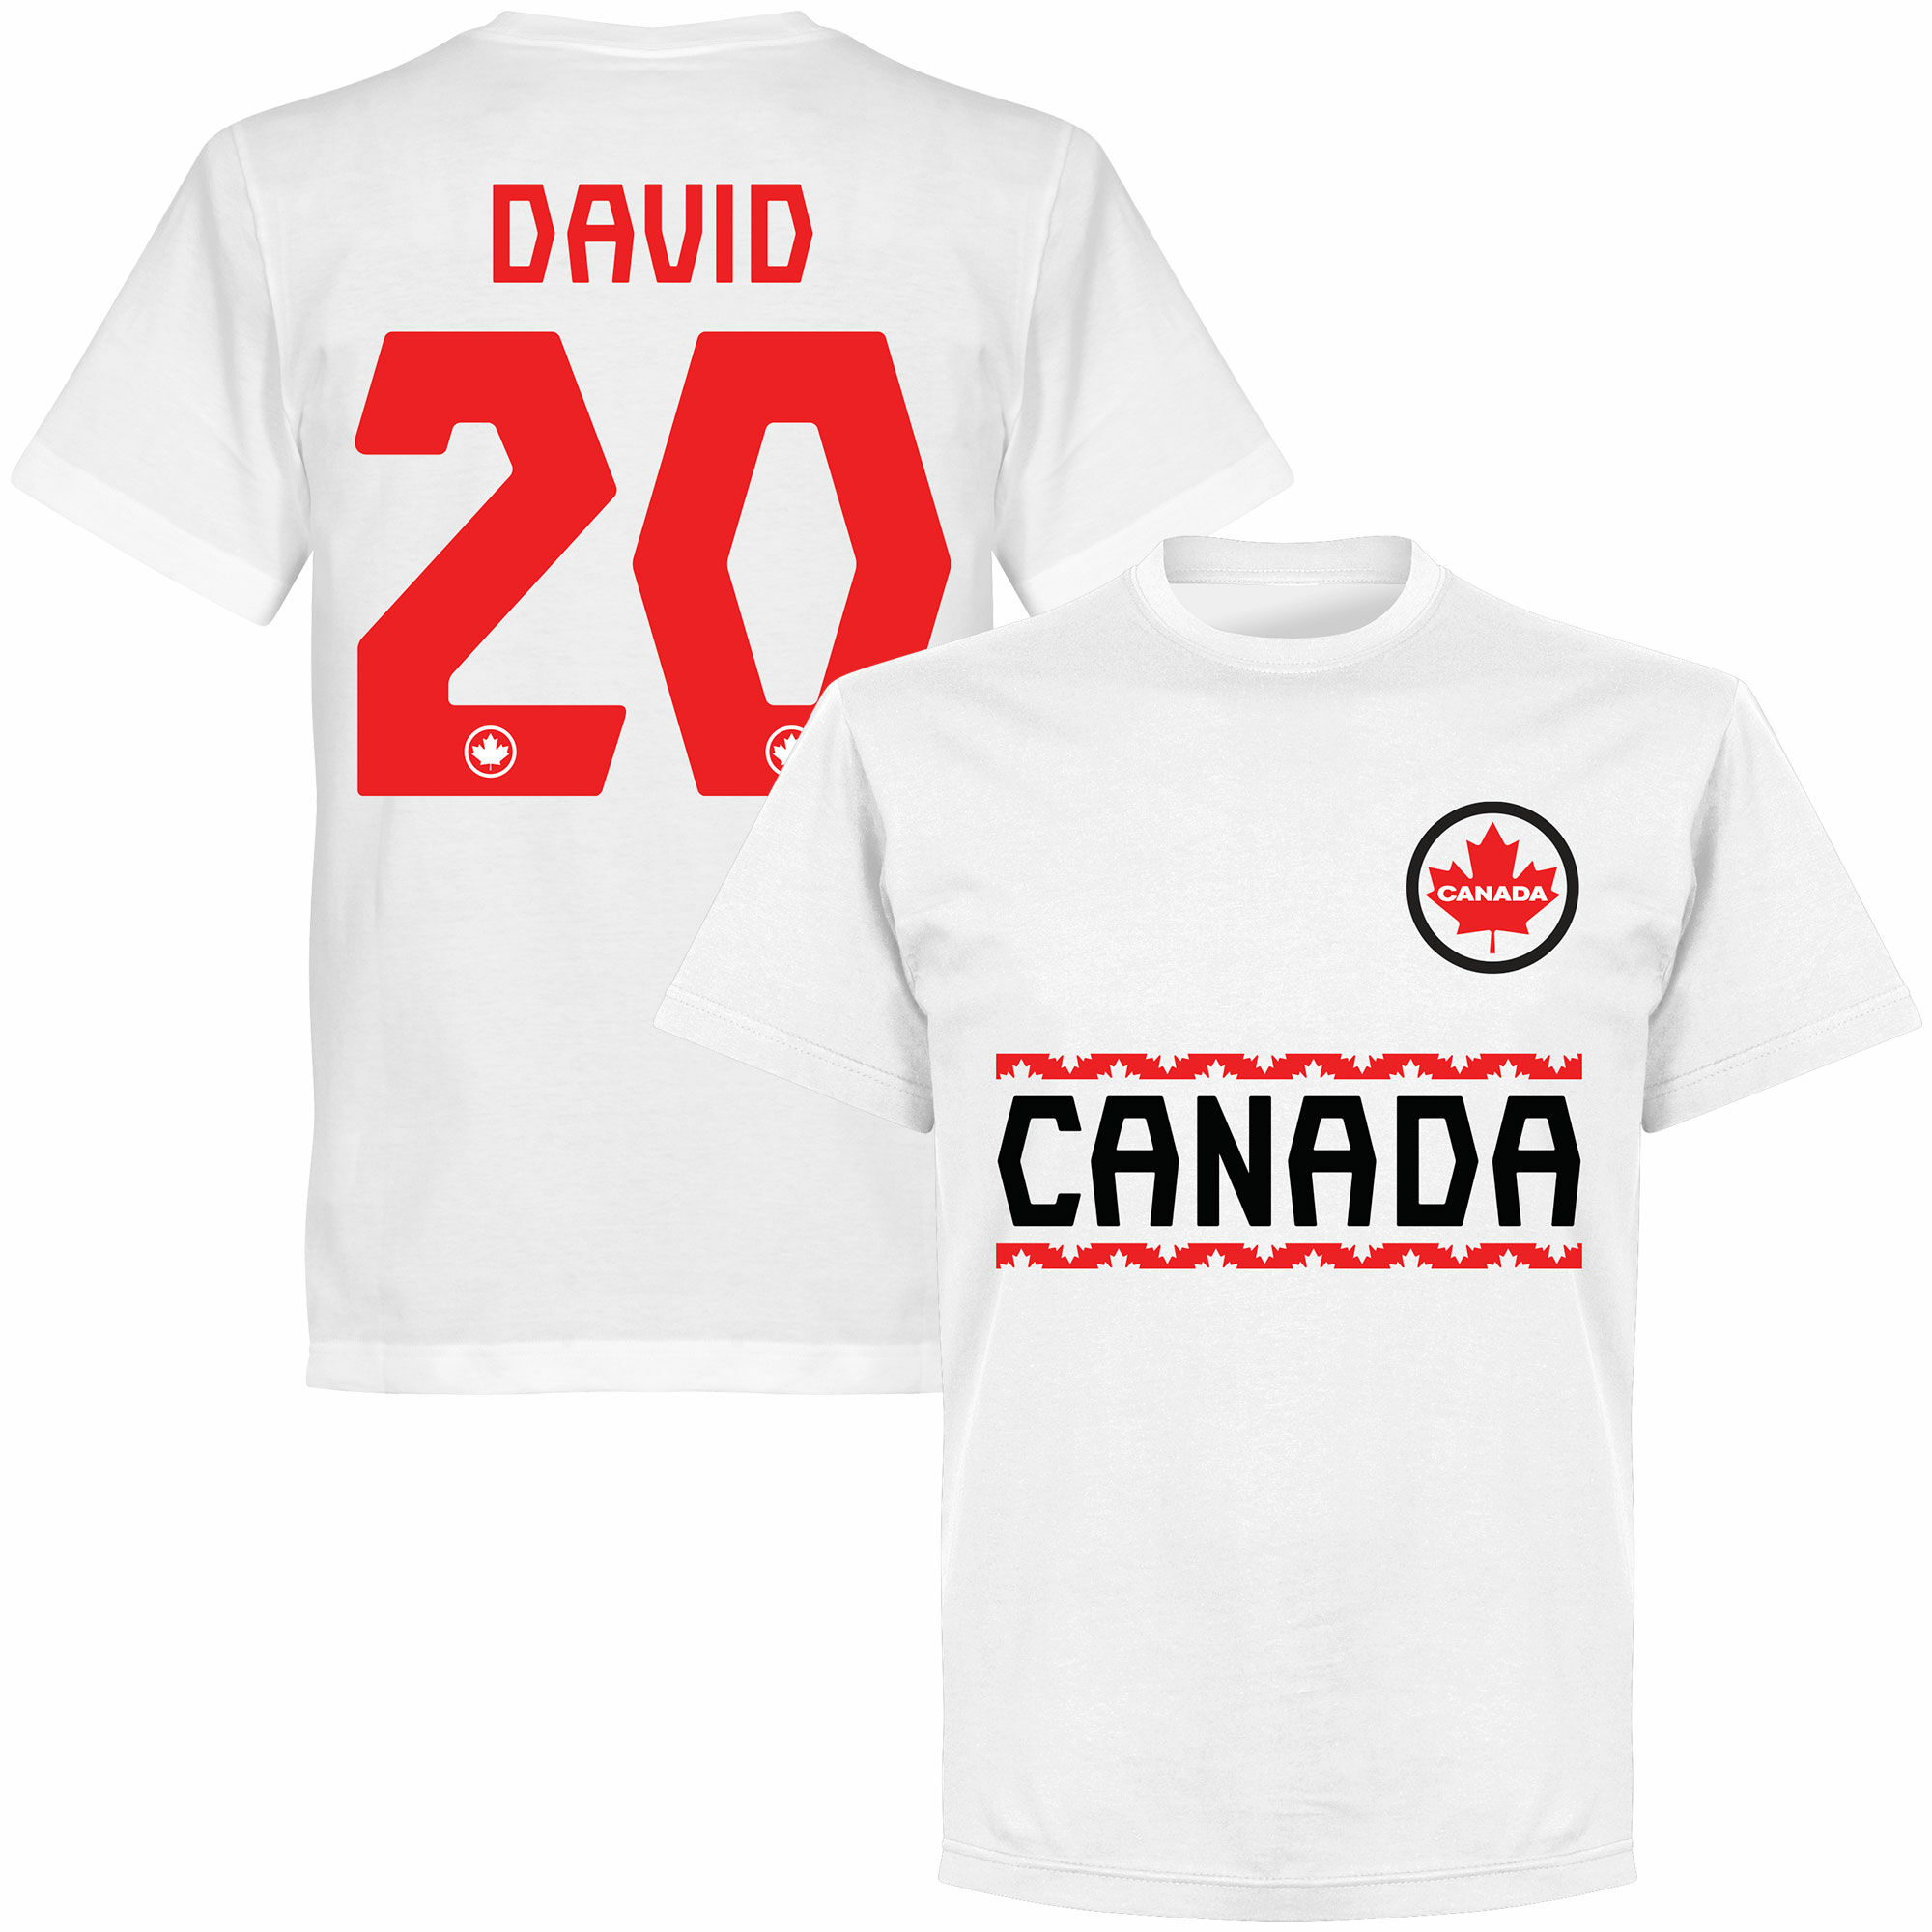 Kanada - Tričko - bílé, číslo 20, Jonathan David